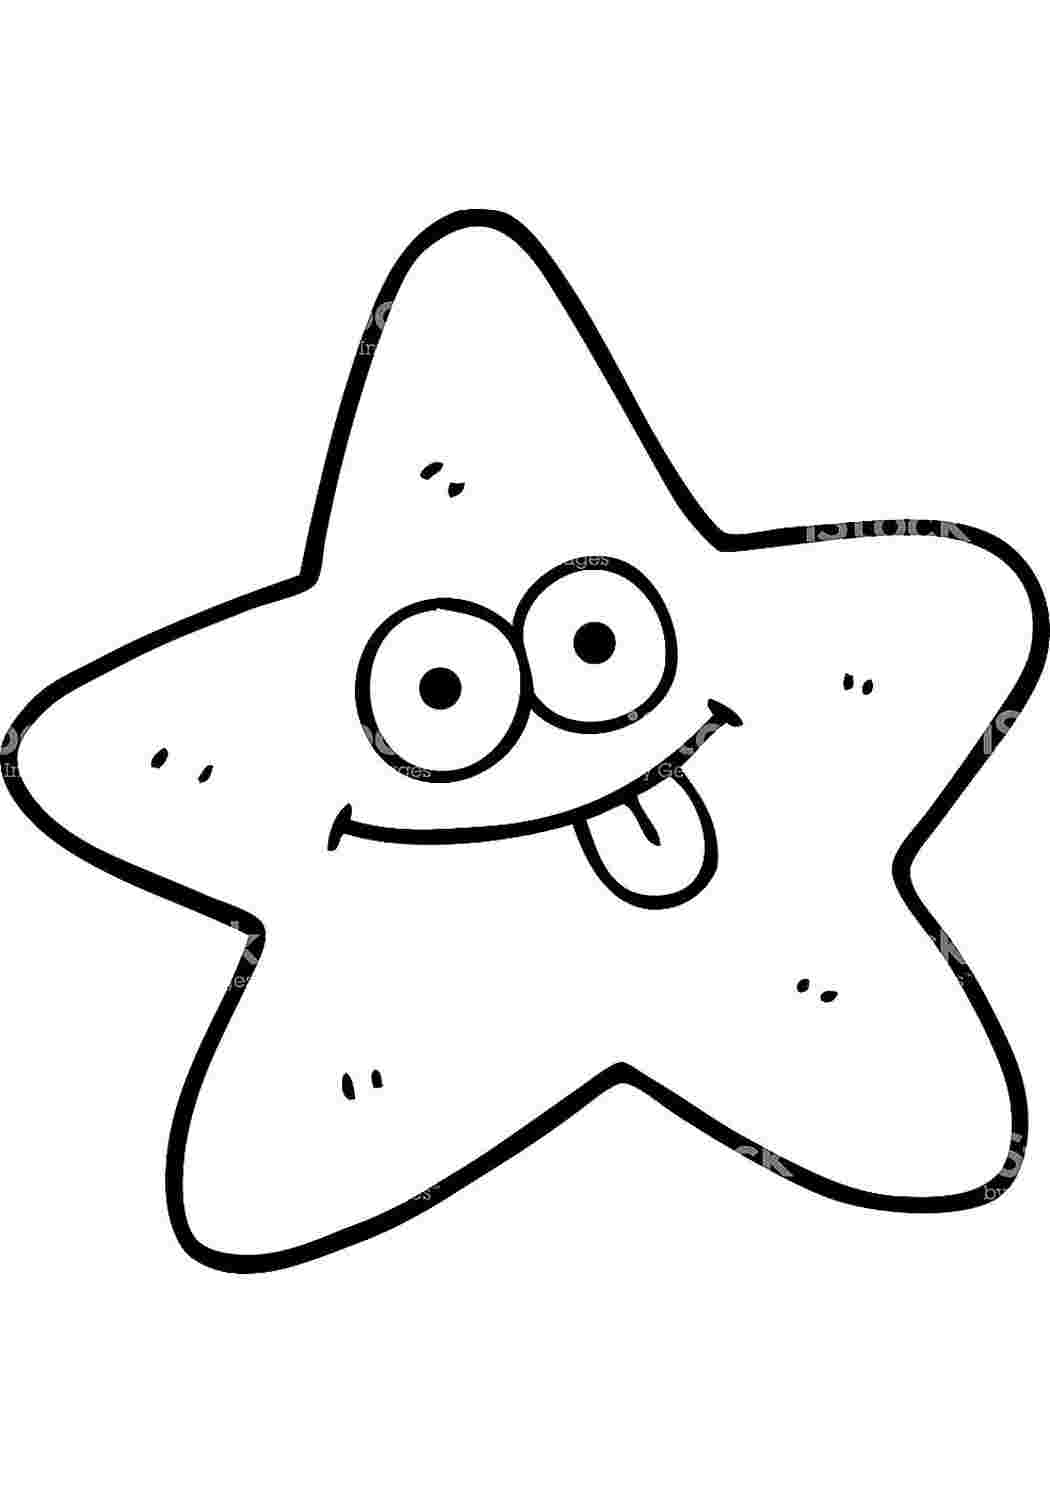 Как нарисовать морскую звезду карандашом поэтапно?